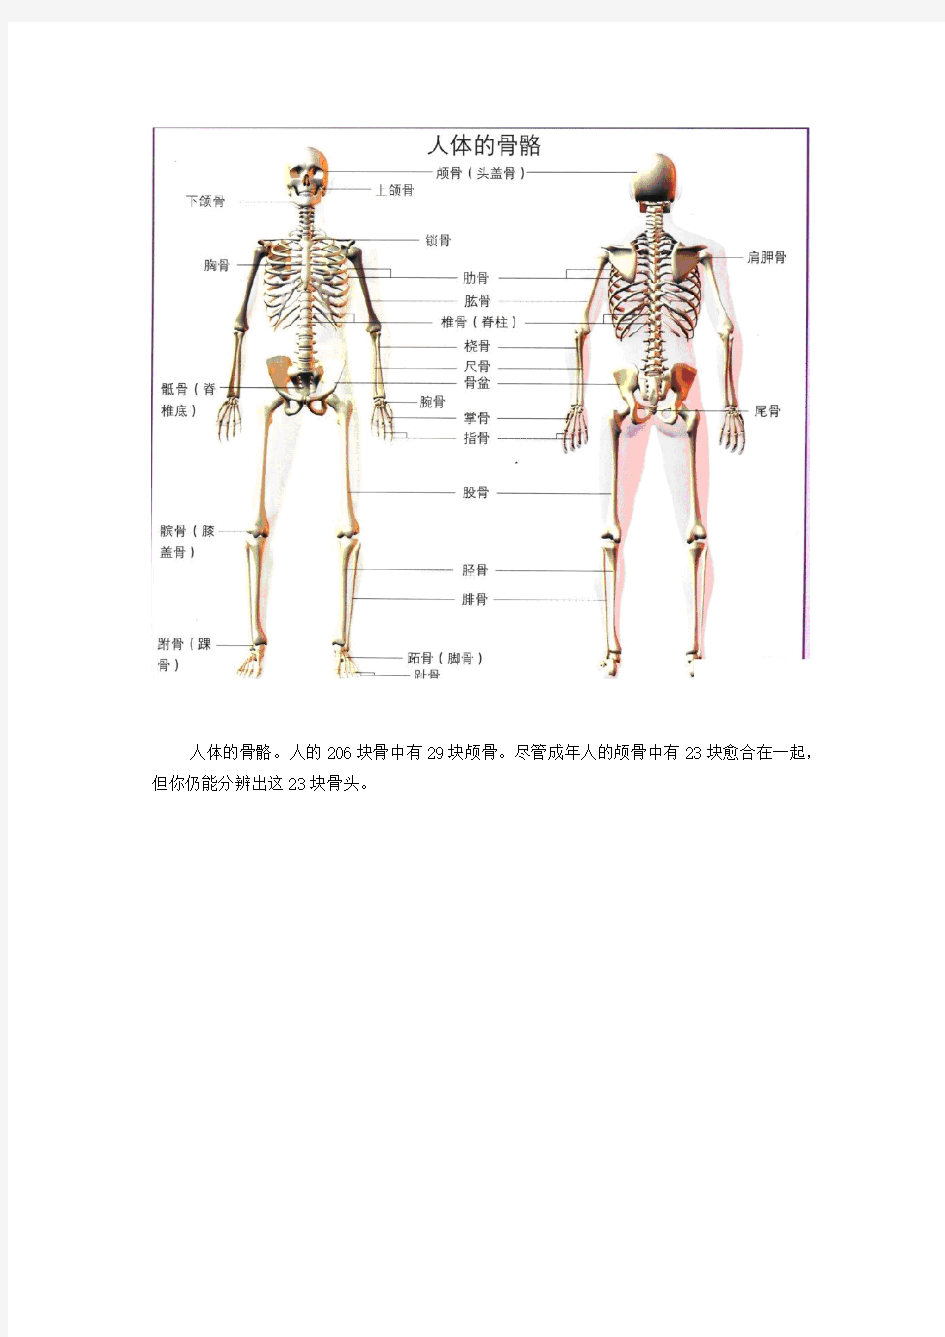 人体骨骼图(全身)-骨骼结构图-推荐下载